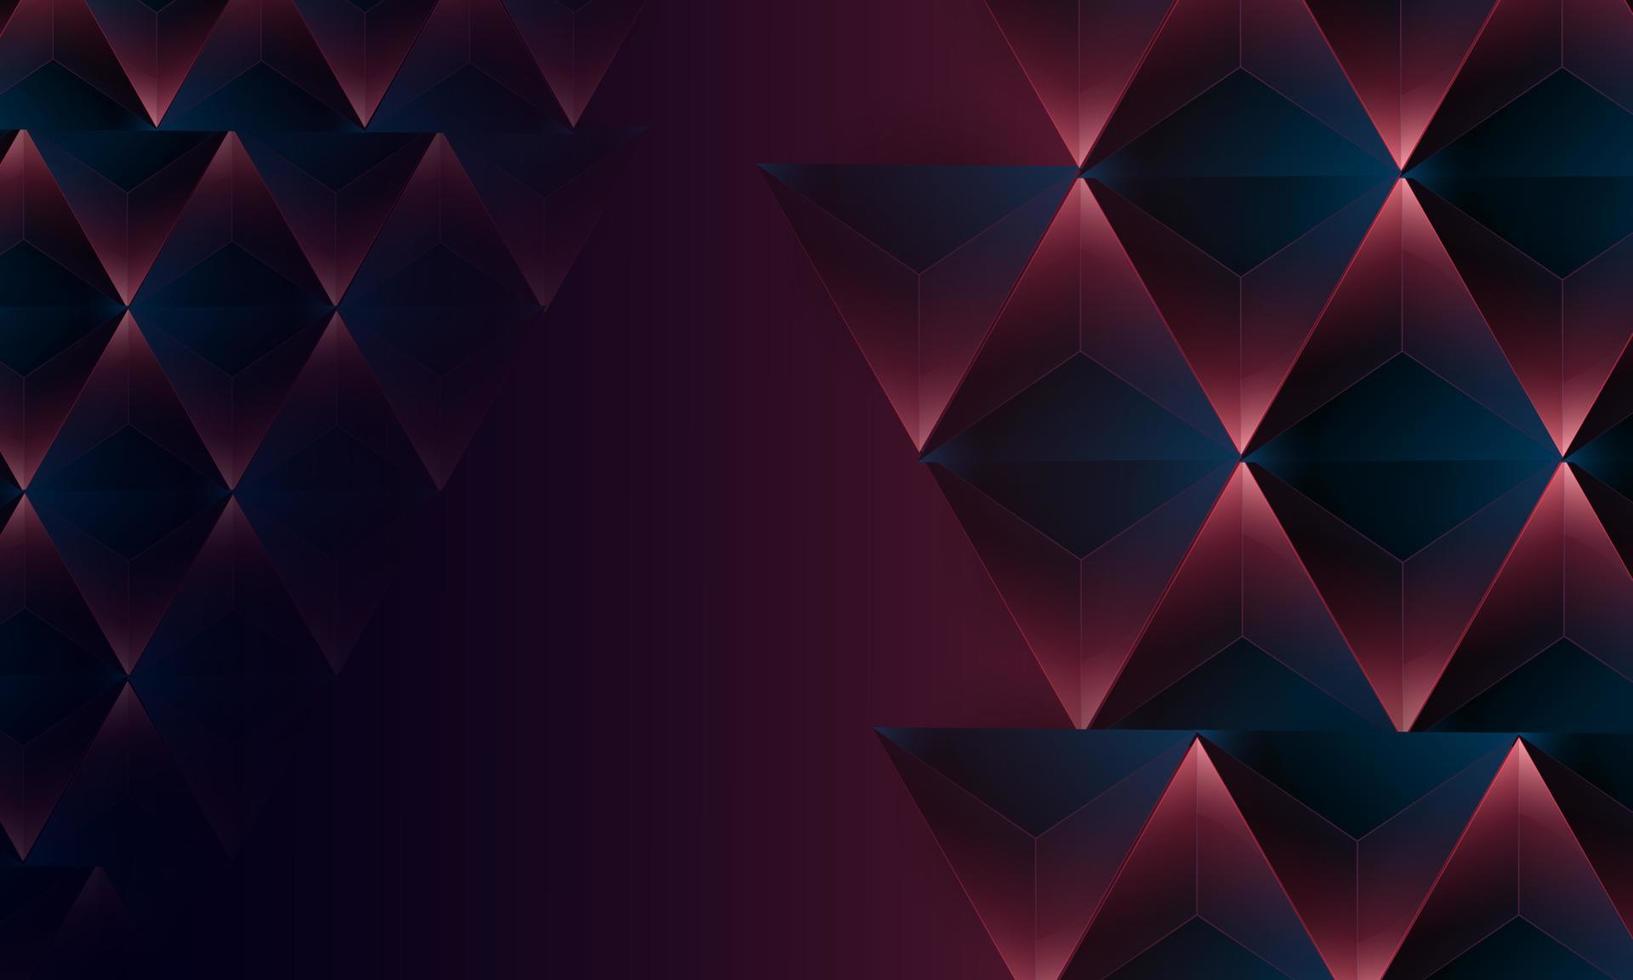 abstrakte dunkelviolette polygondreiecke formen muster auf hintergrund. digitales Technologiekonzept des Illustrationsvektordesigns. vektor